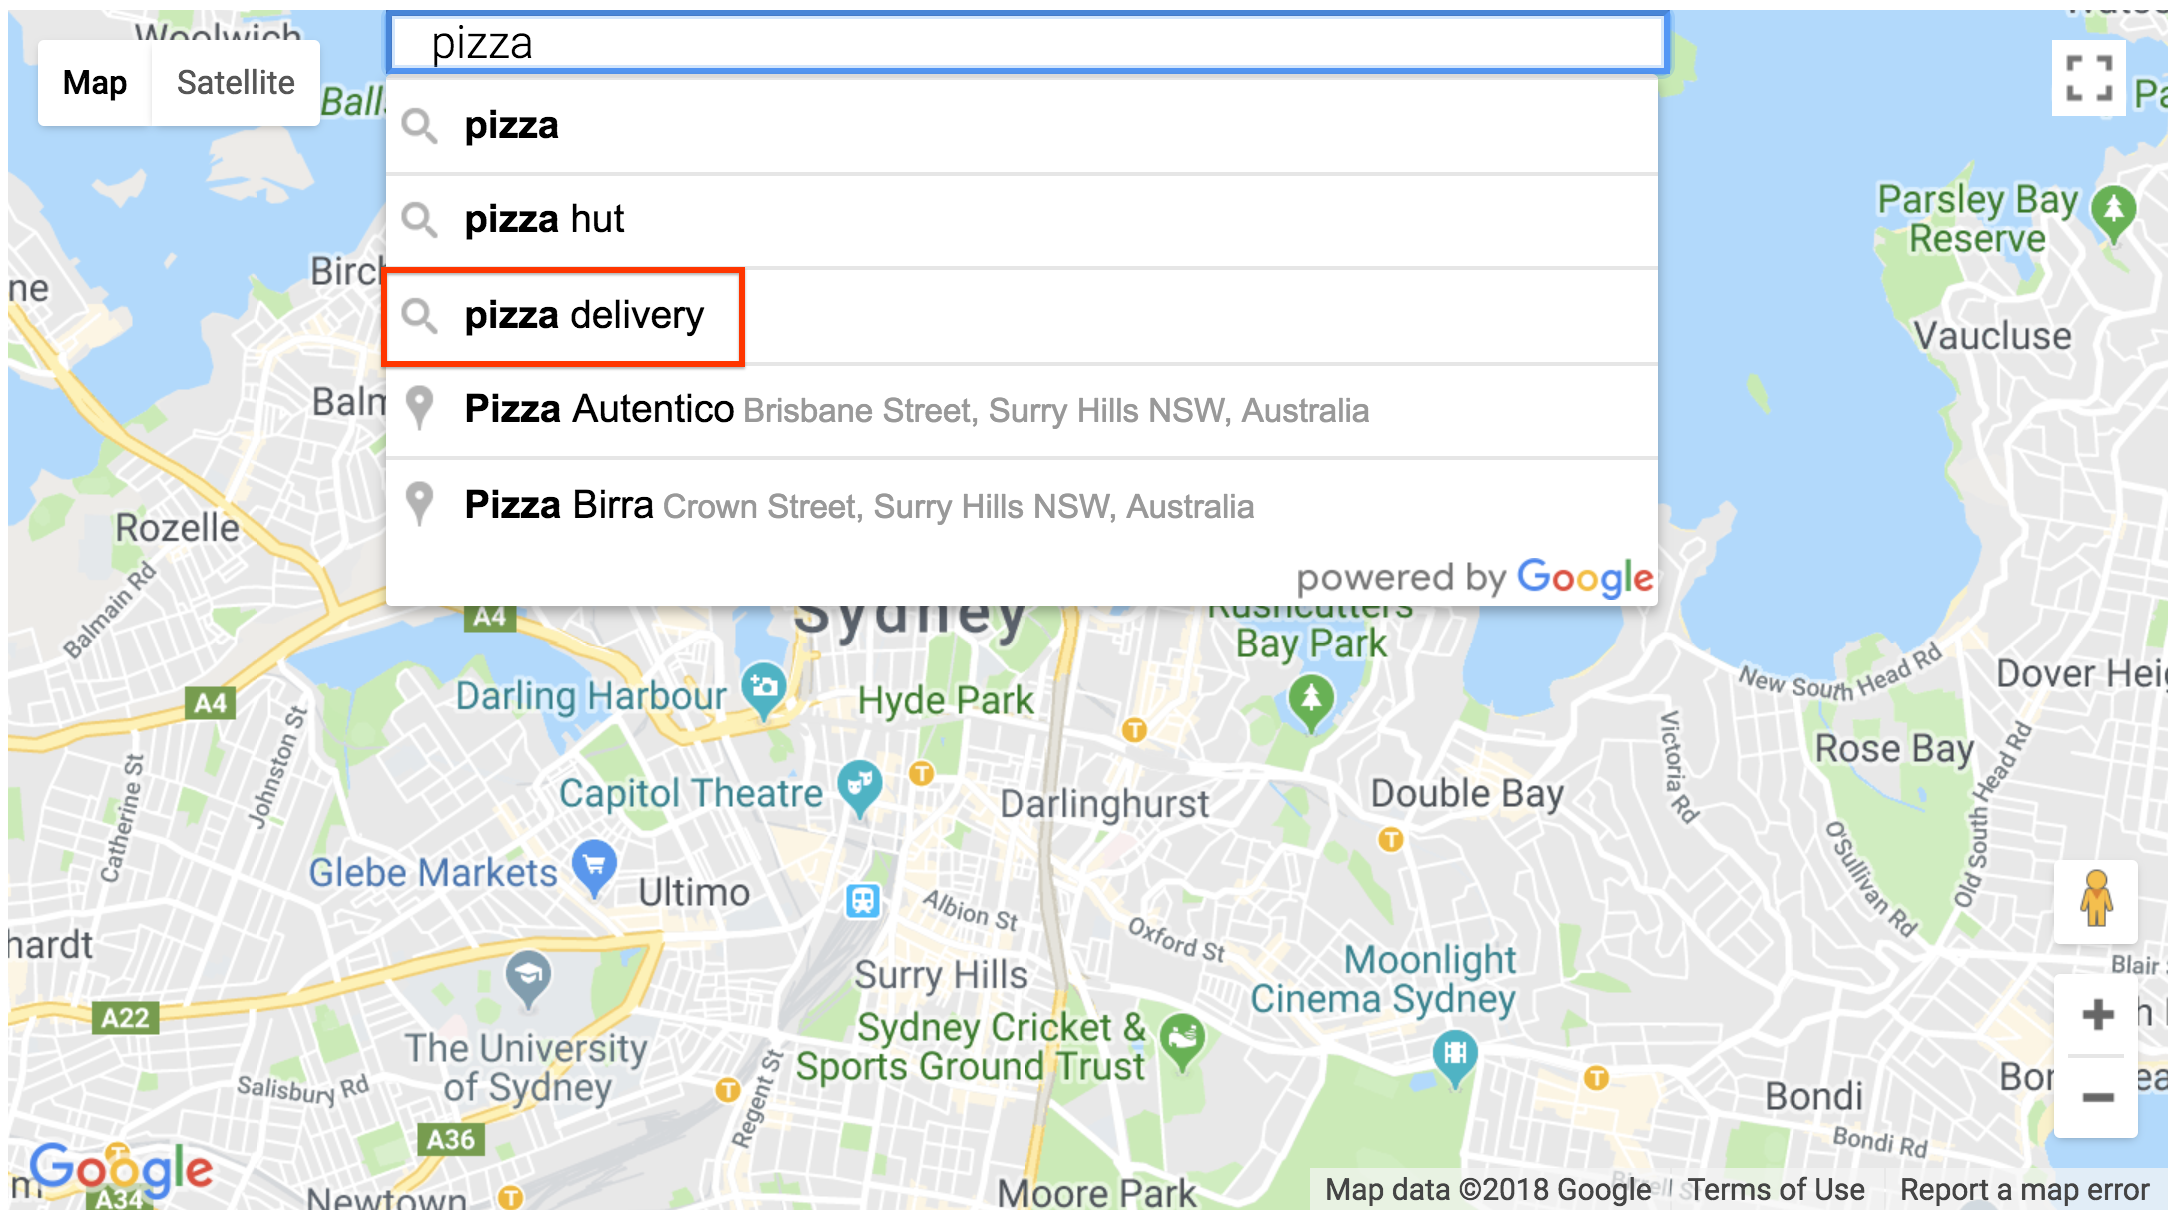 Selezione della query del widget della casella di ricerca dei dettagli dei luoghi